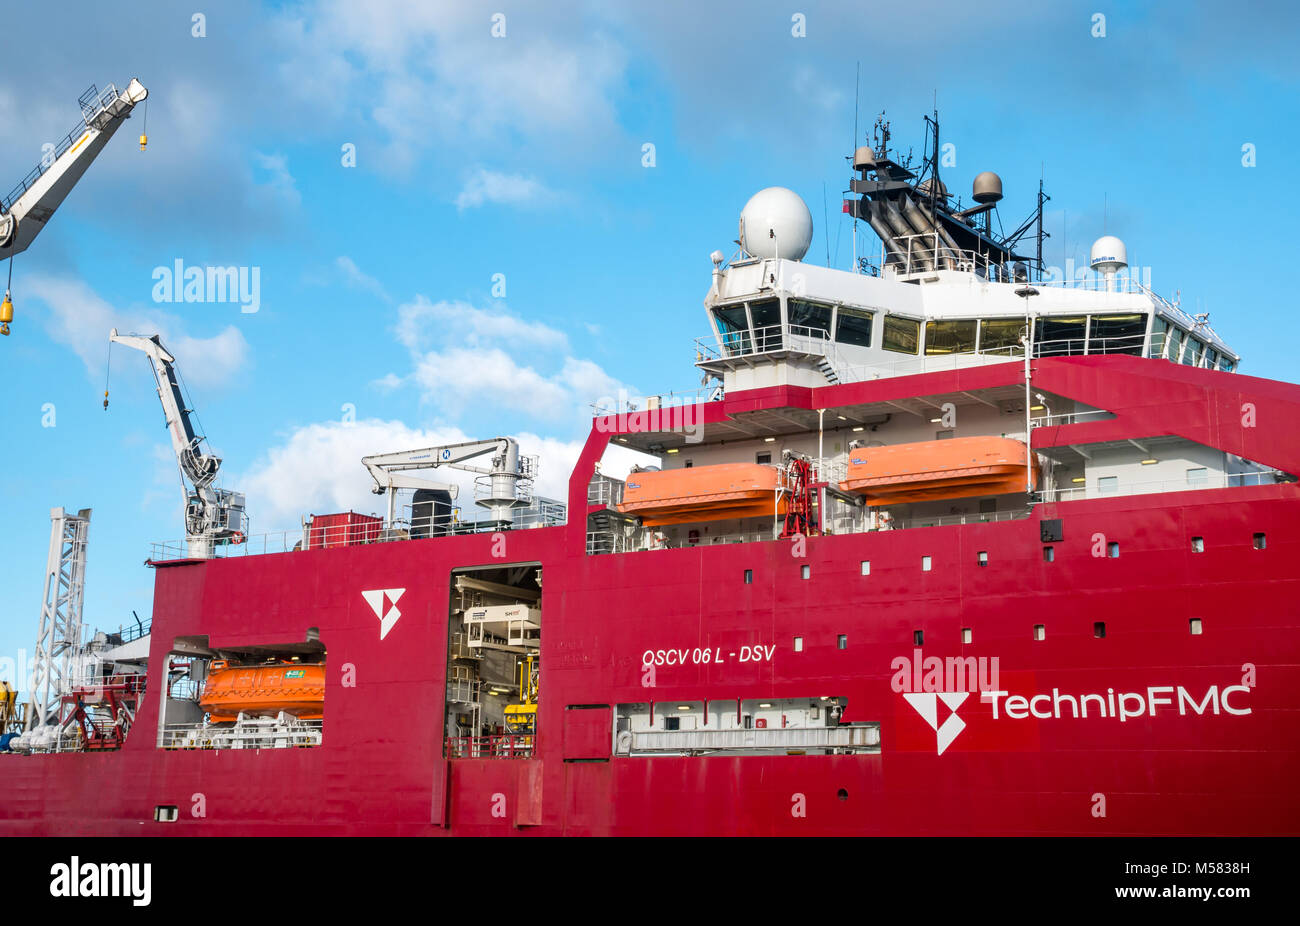 Technip Brücke, Kräne und Rettungsboote, tiefen arktischen, Tauchen und schweren Bau support Schiff, Leith Harbour, Edinburgh, Schottland, Großbritannien Stockfoto